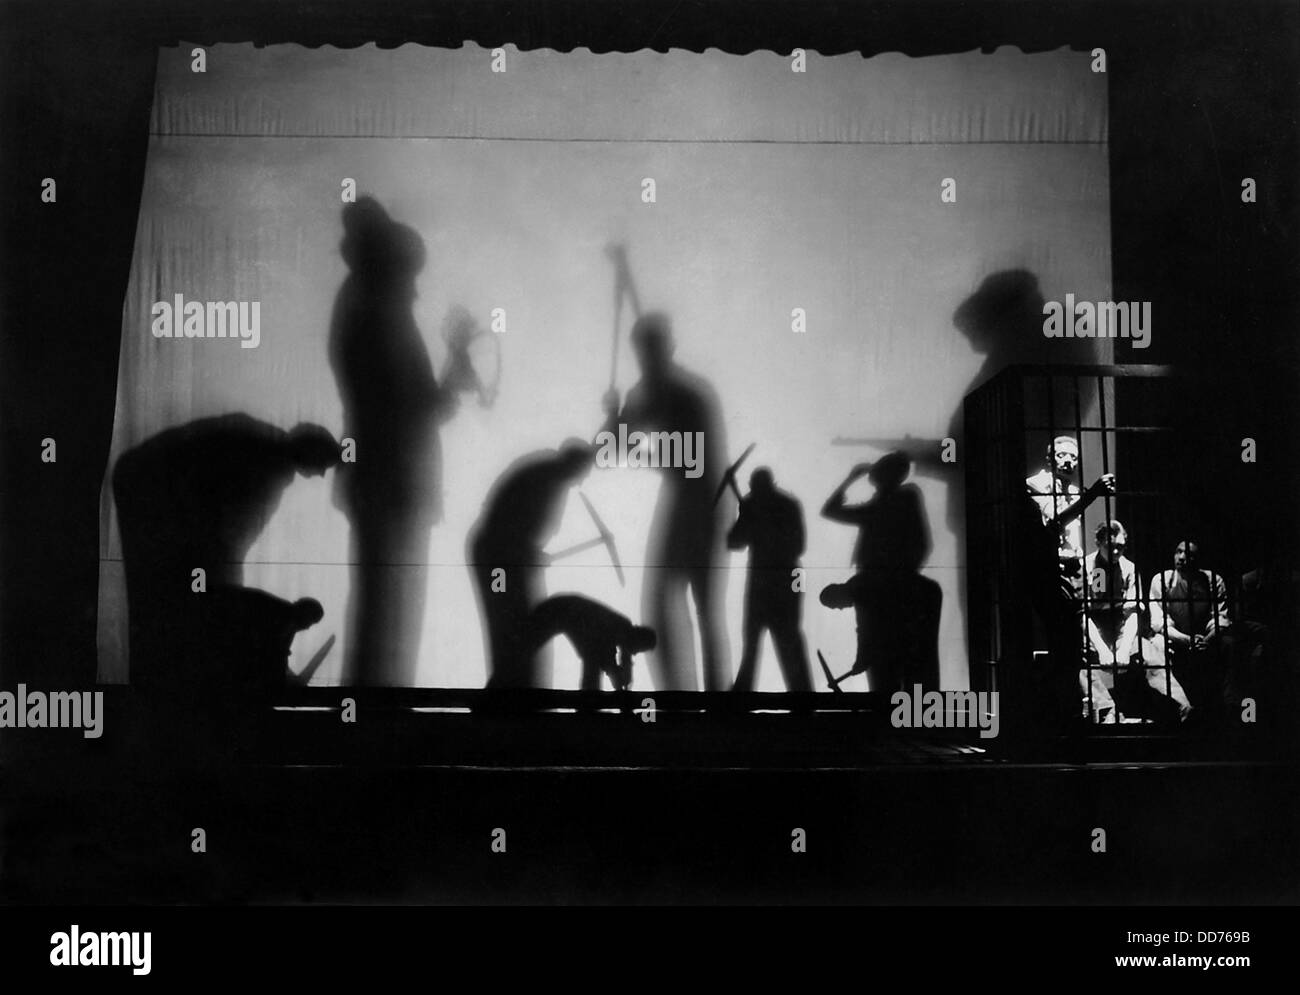 WPA Teatro federale il progetto "AAA arato sotto", 1935. Il gioco era un "vivere quotidiano", una scenografica presentazione di fatto Foto Stock